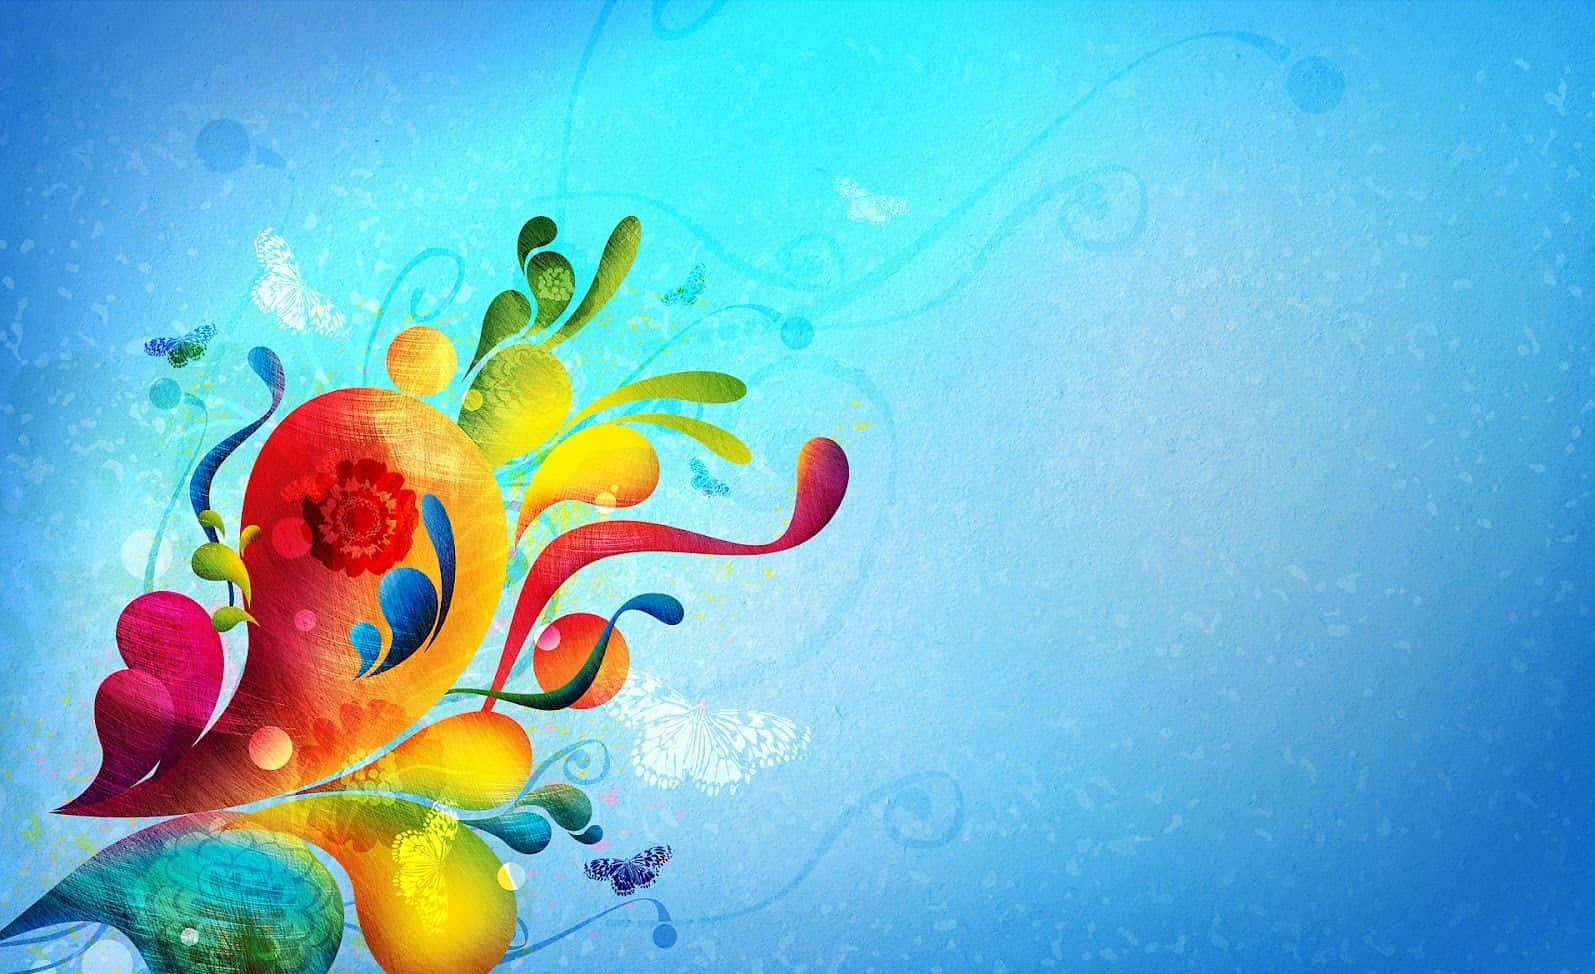 Vibrant Color Explosion Wallpaper